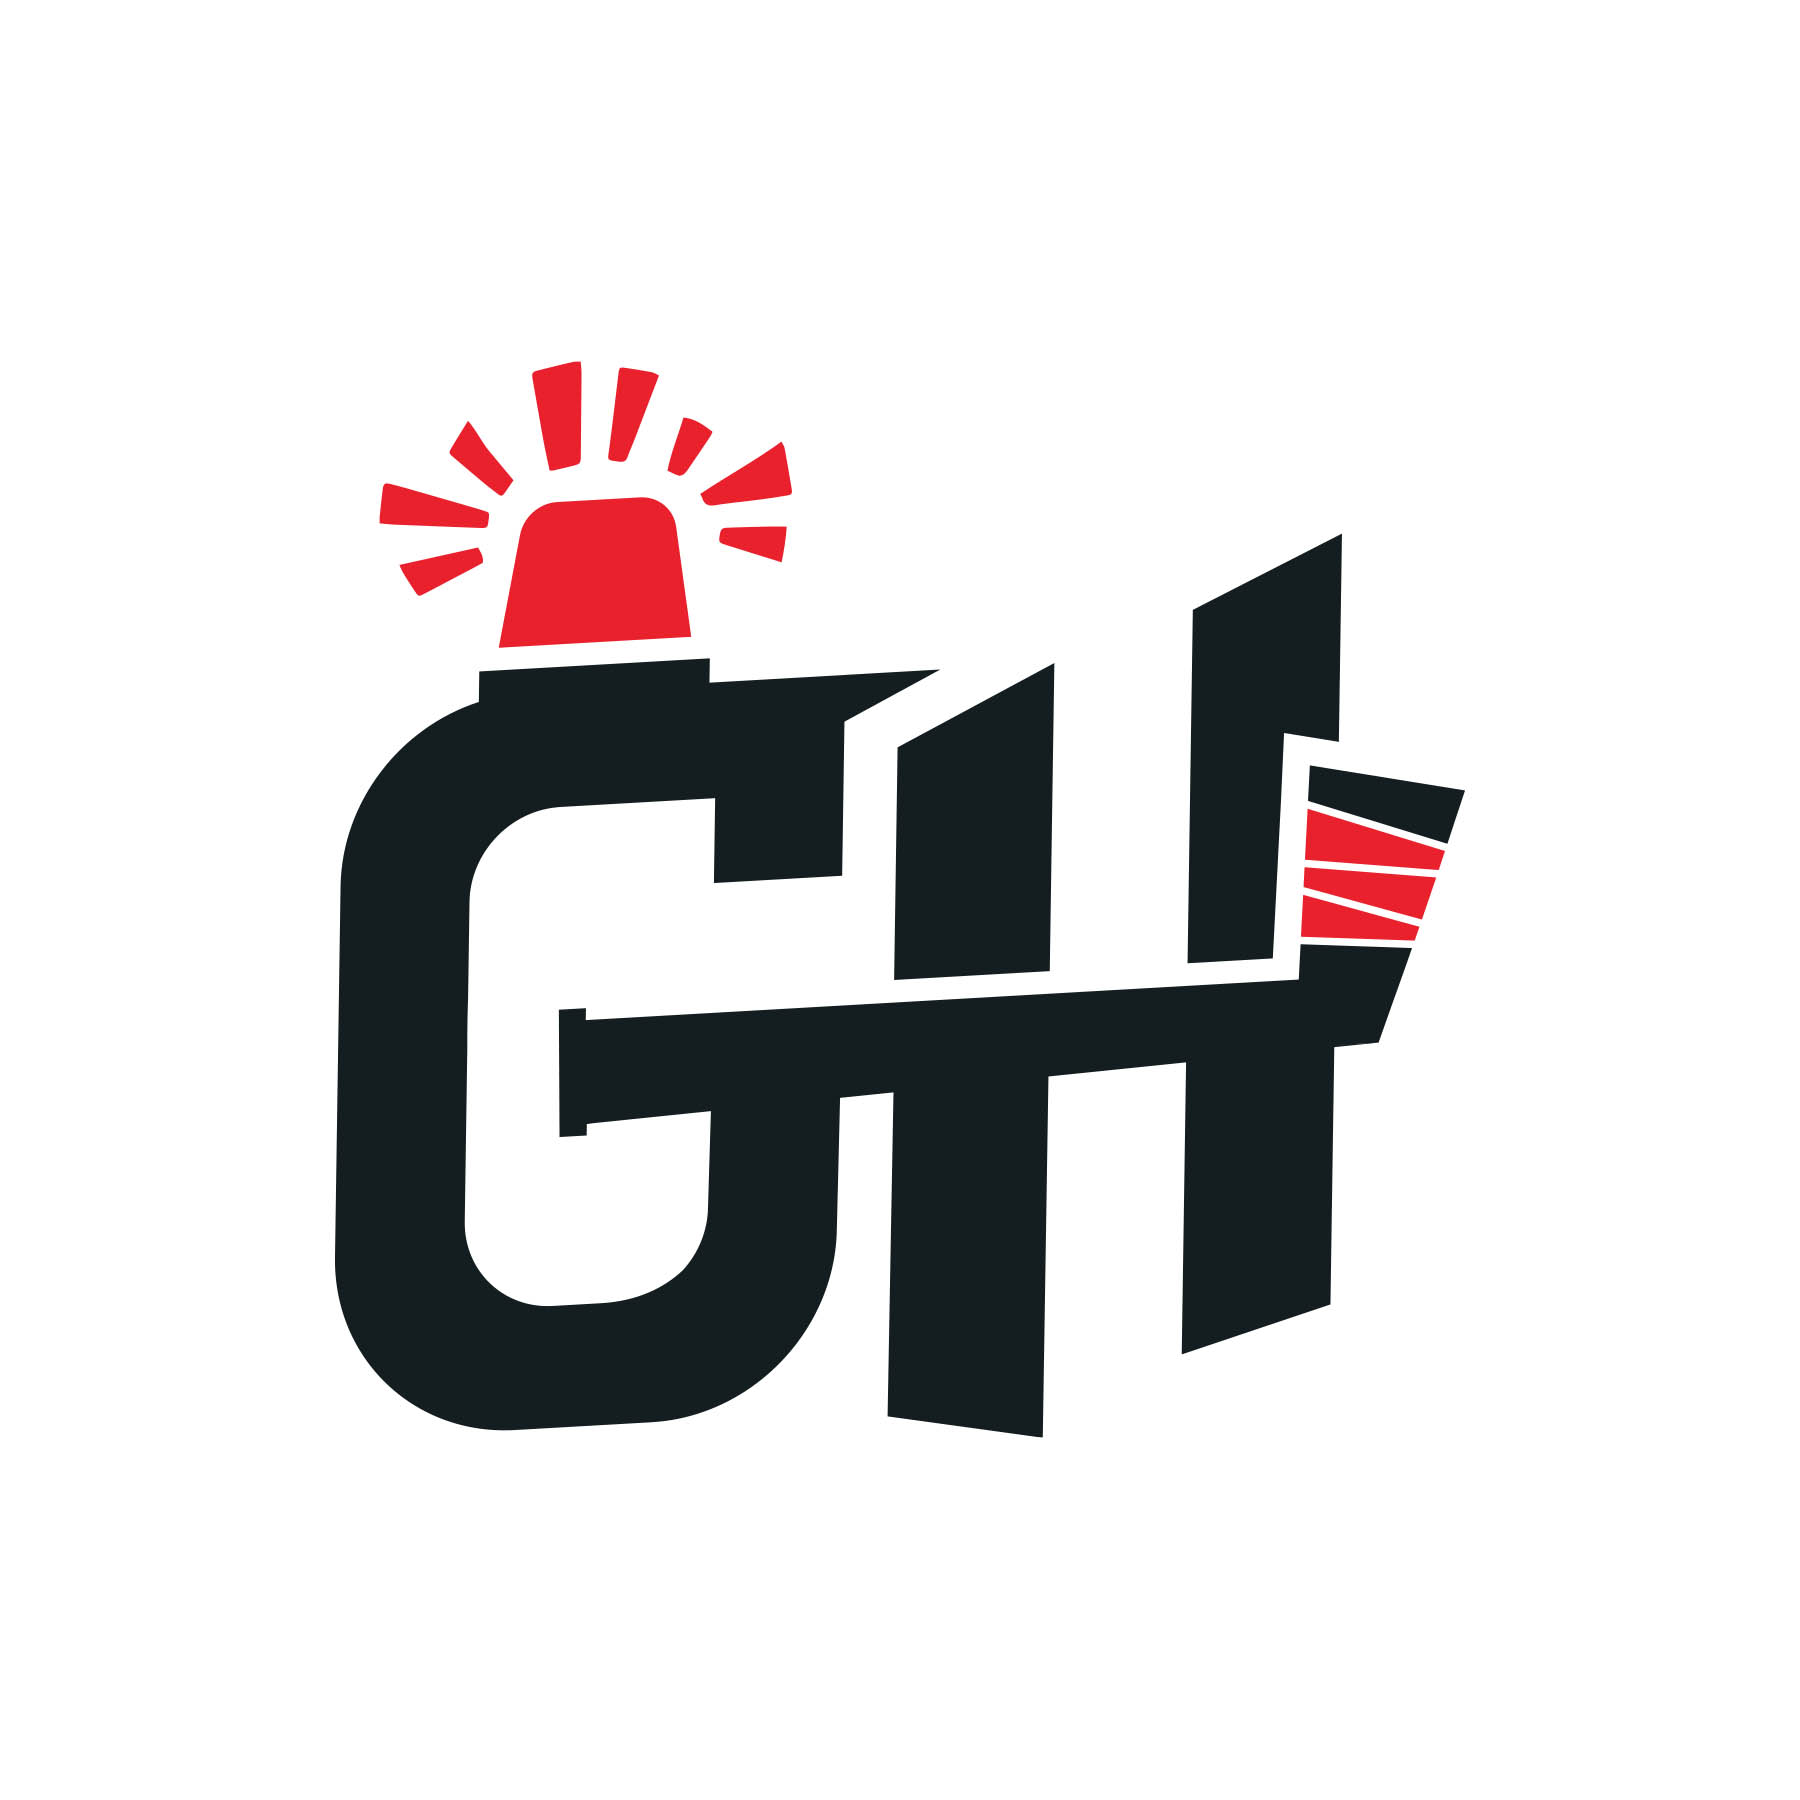 Goal Horn Instagram Logo